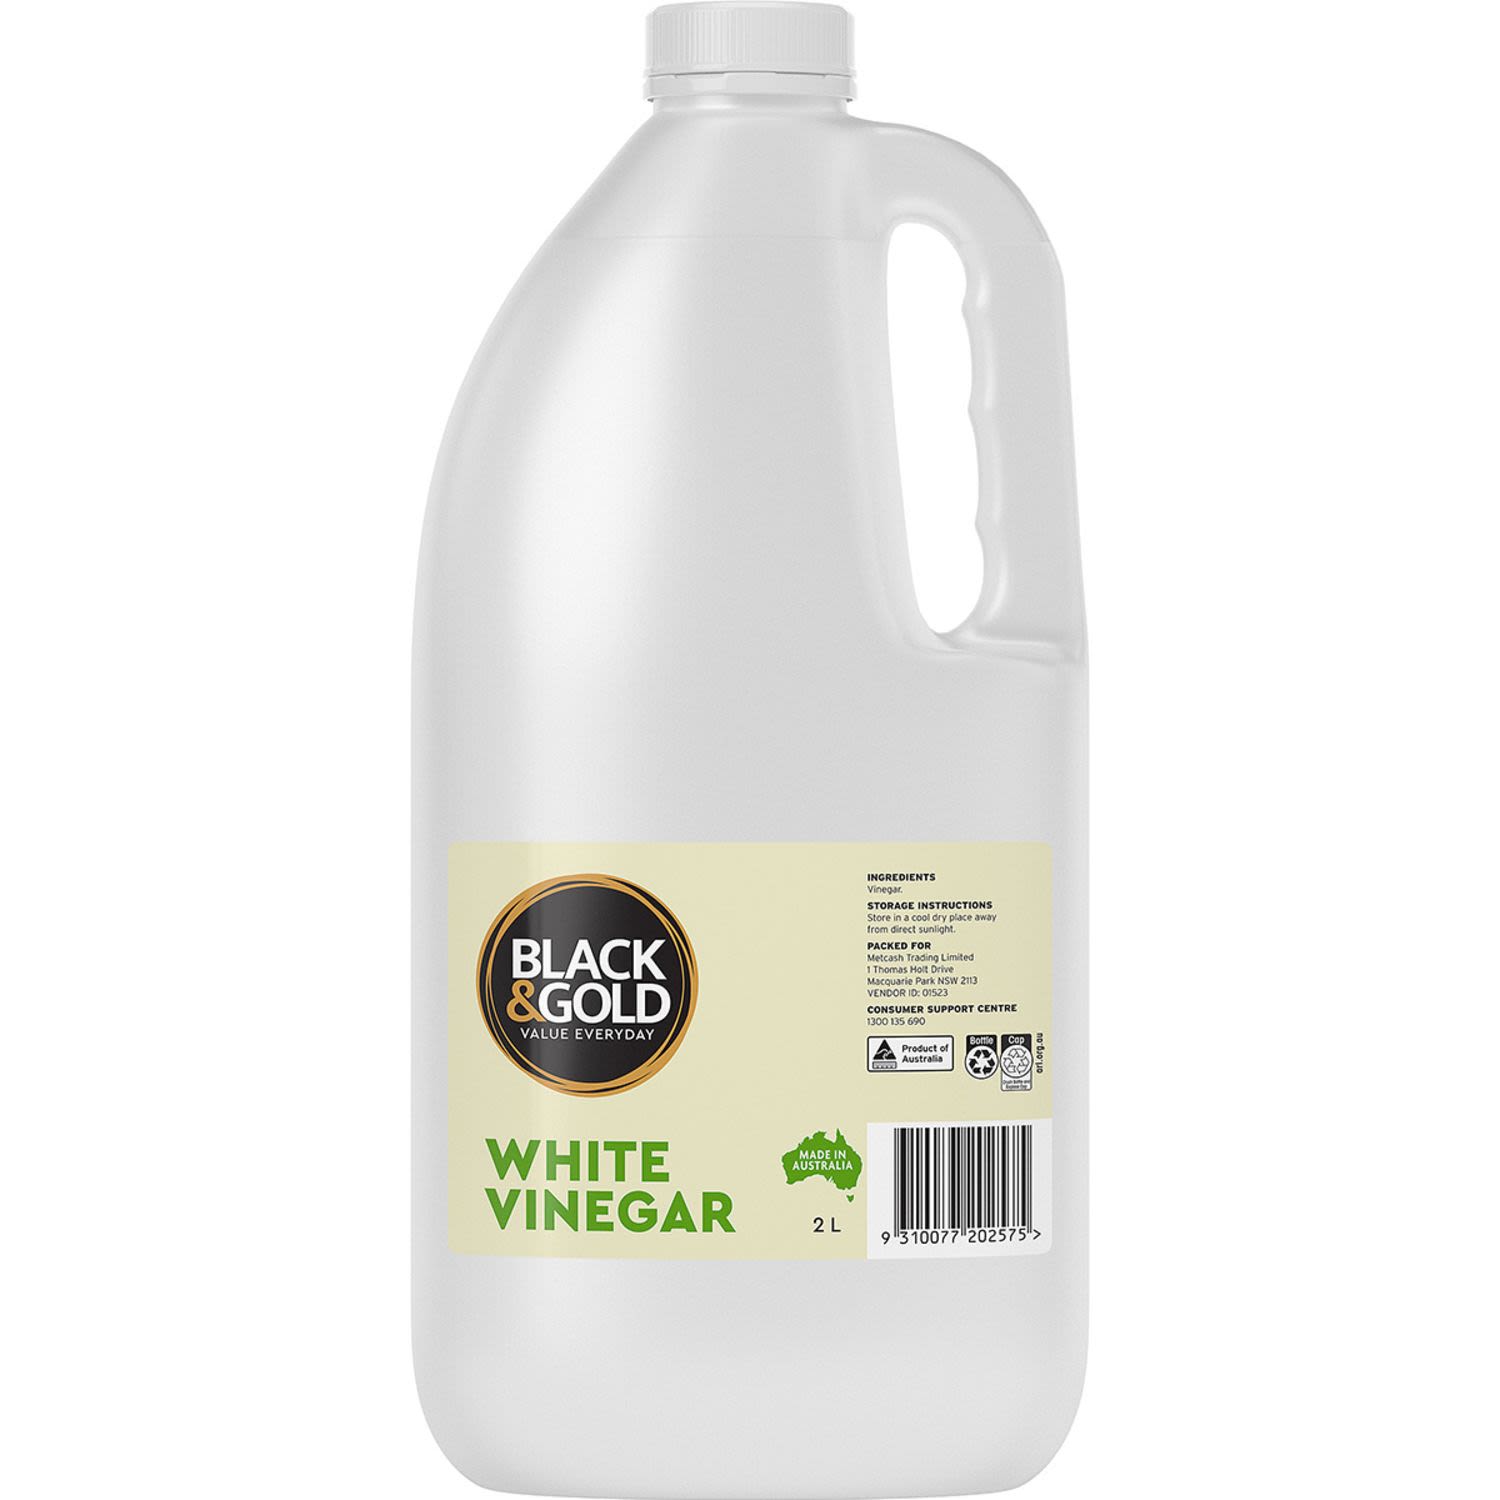 Black & Gold White Vinegar, 2 Litre